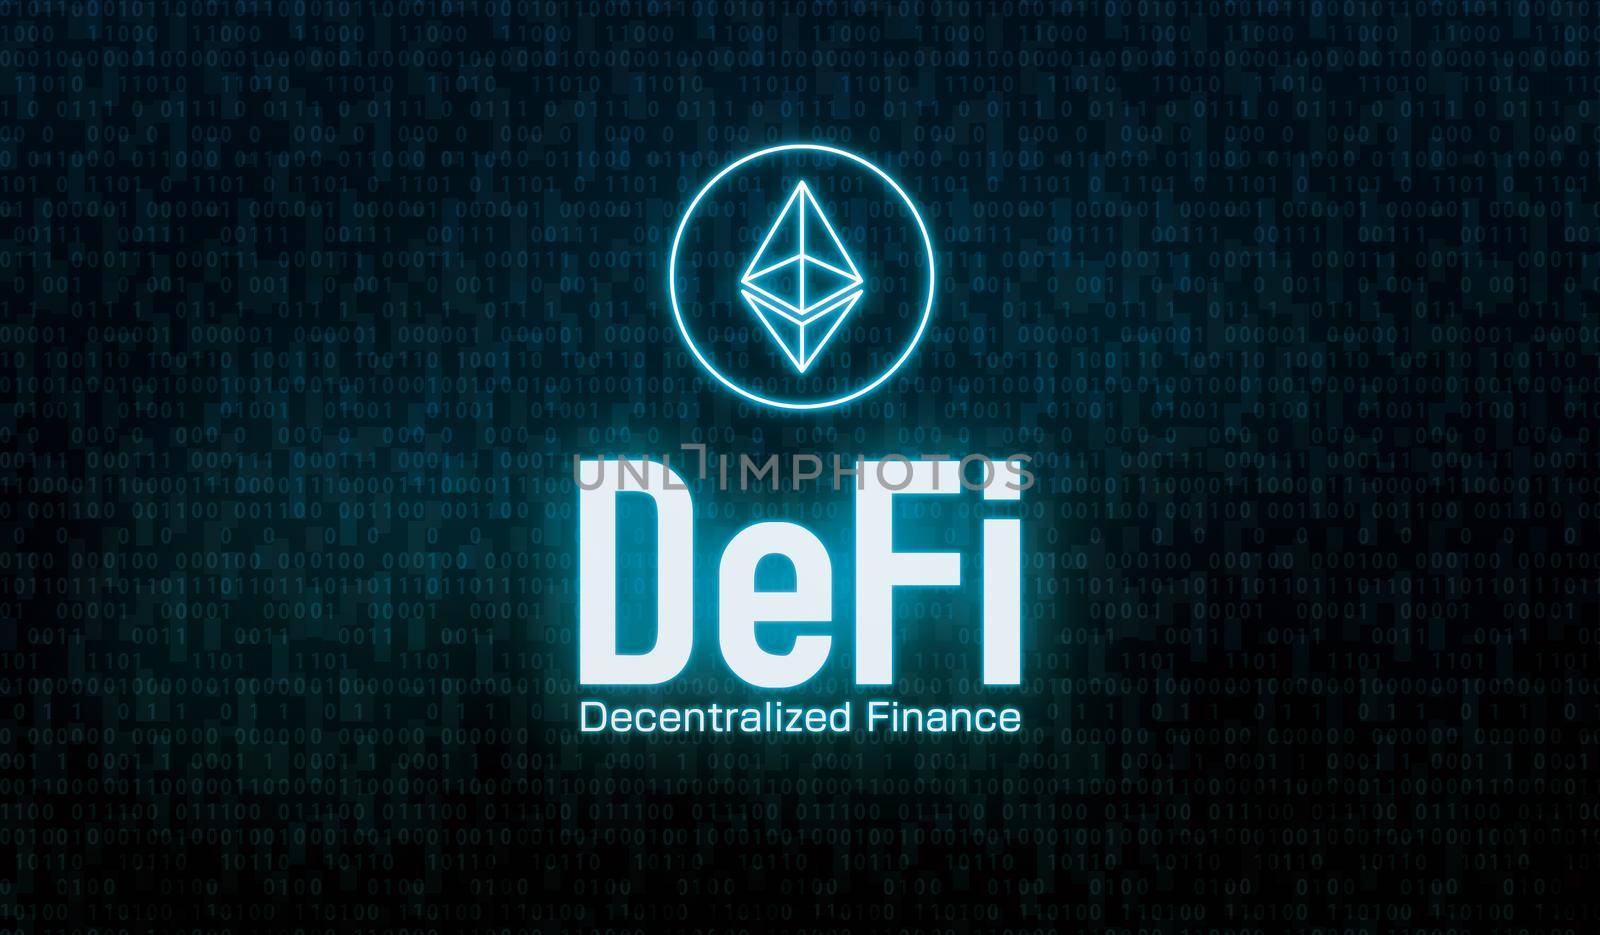 DeFi (Decentralized Finance) concept banner illustration by barks